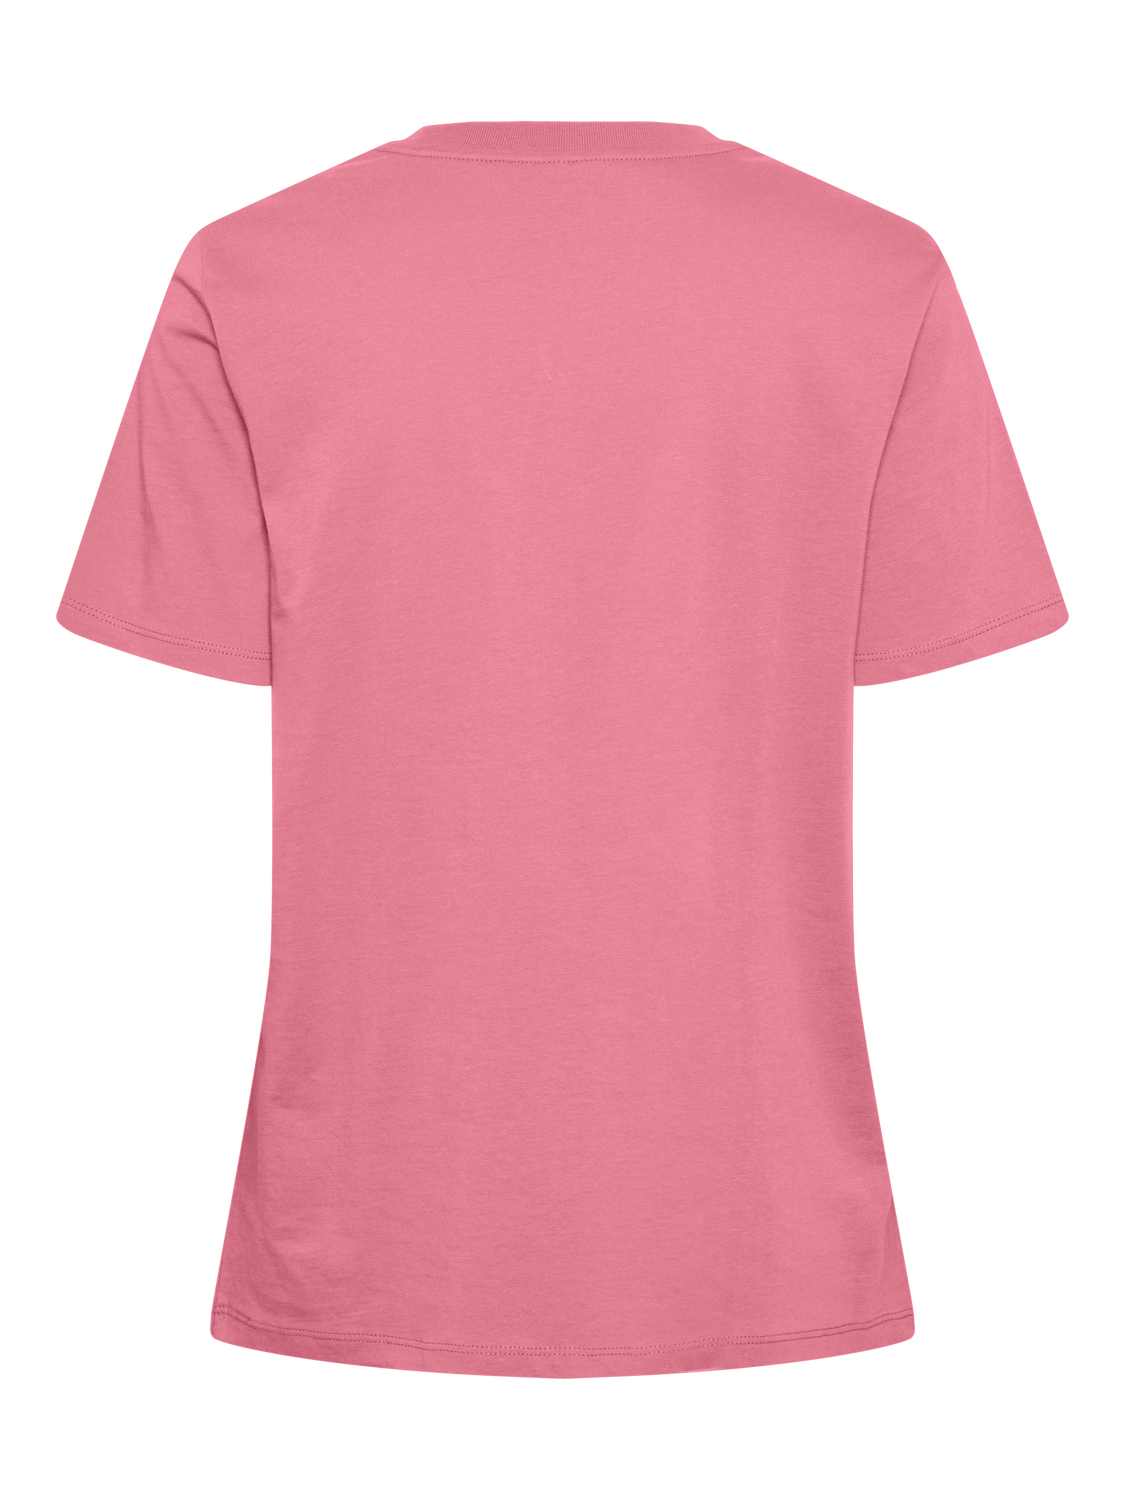 PCRIA T-Shirt - Wild Rose